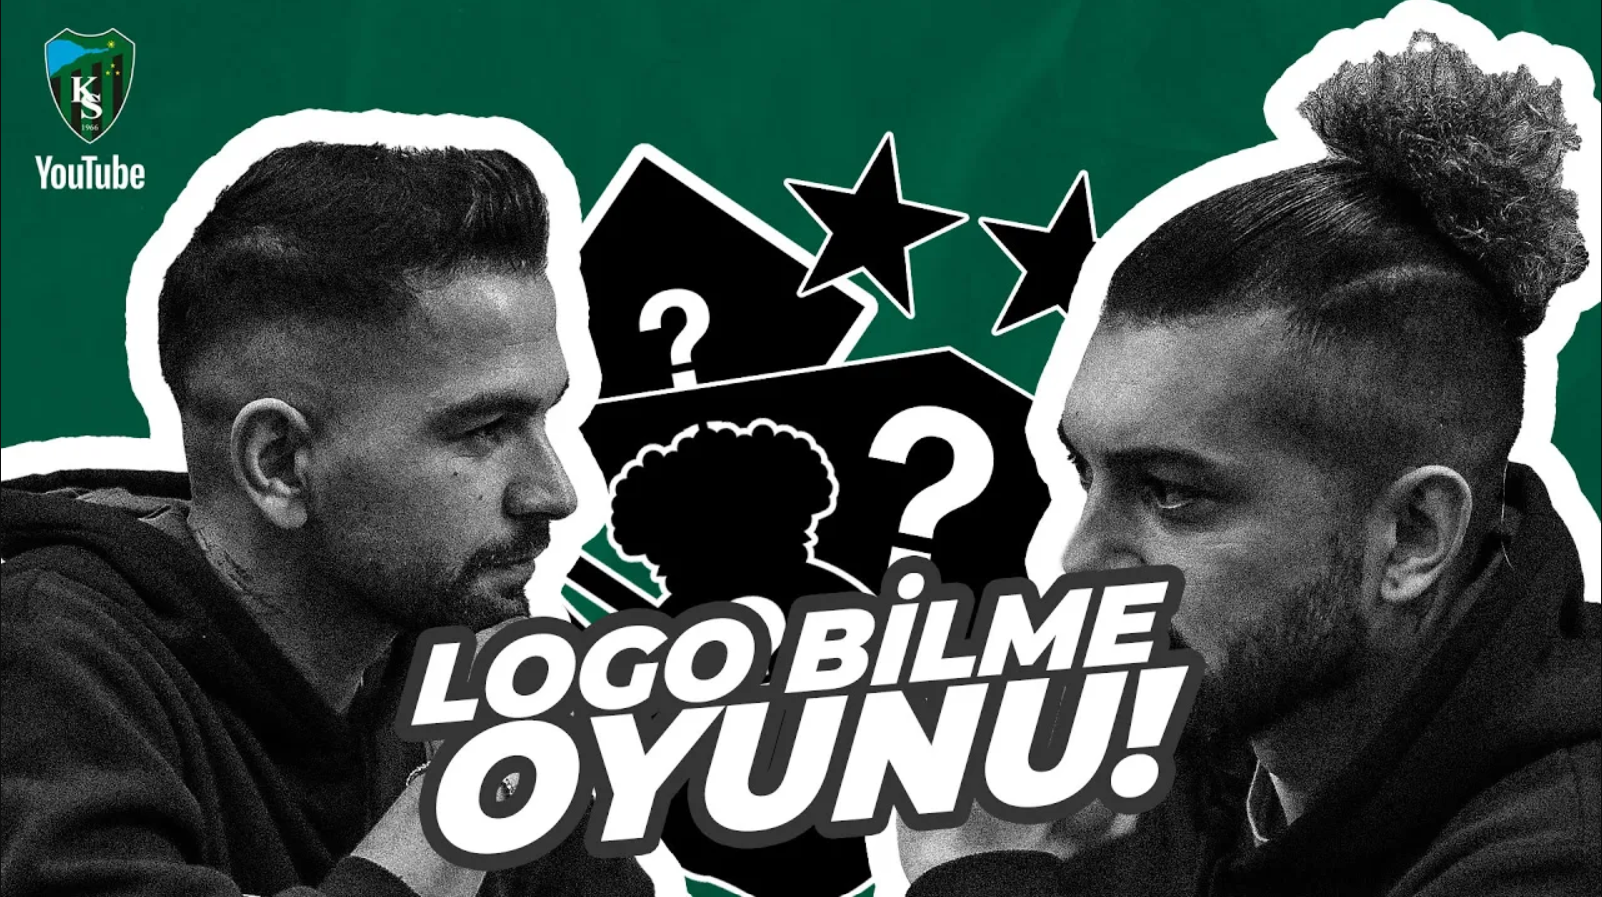 LOGO BİLME OYUNU | Tayfun Aydoğan & Beykan Şimşek